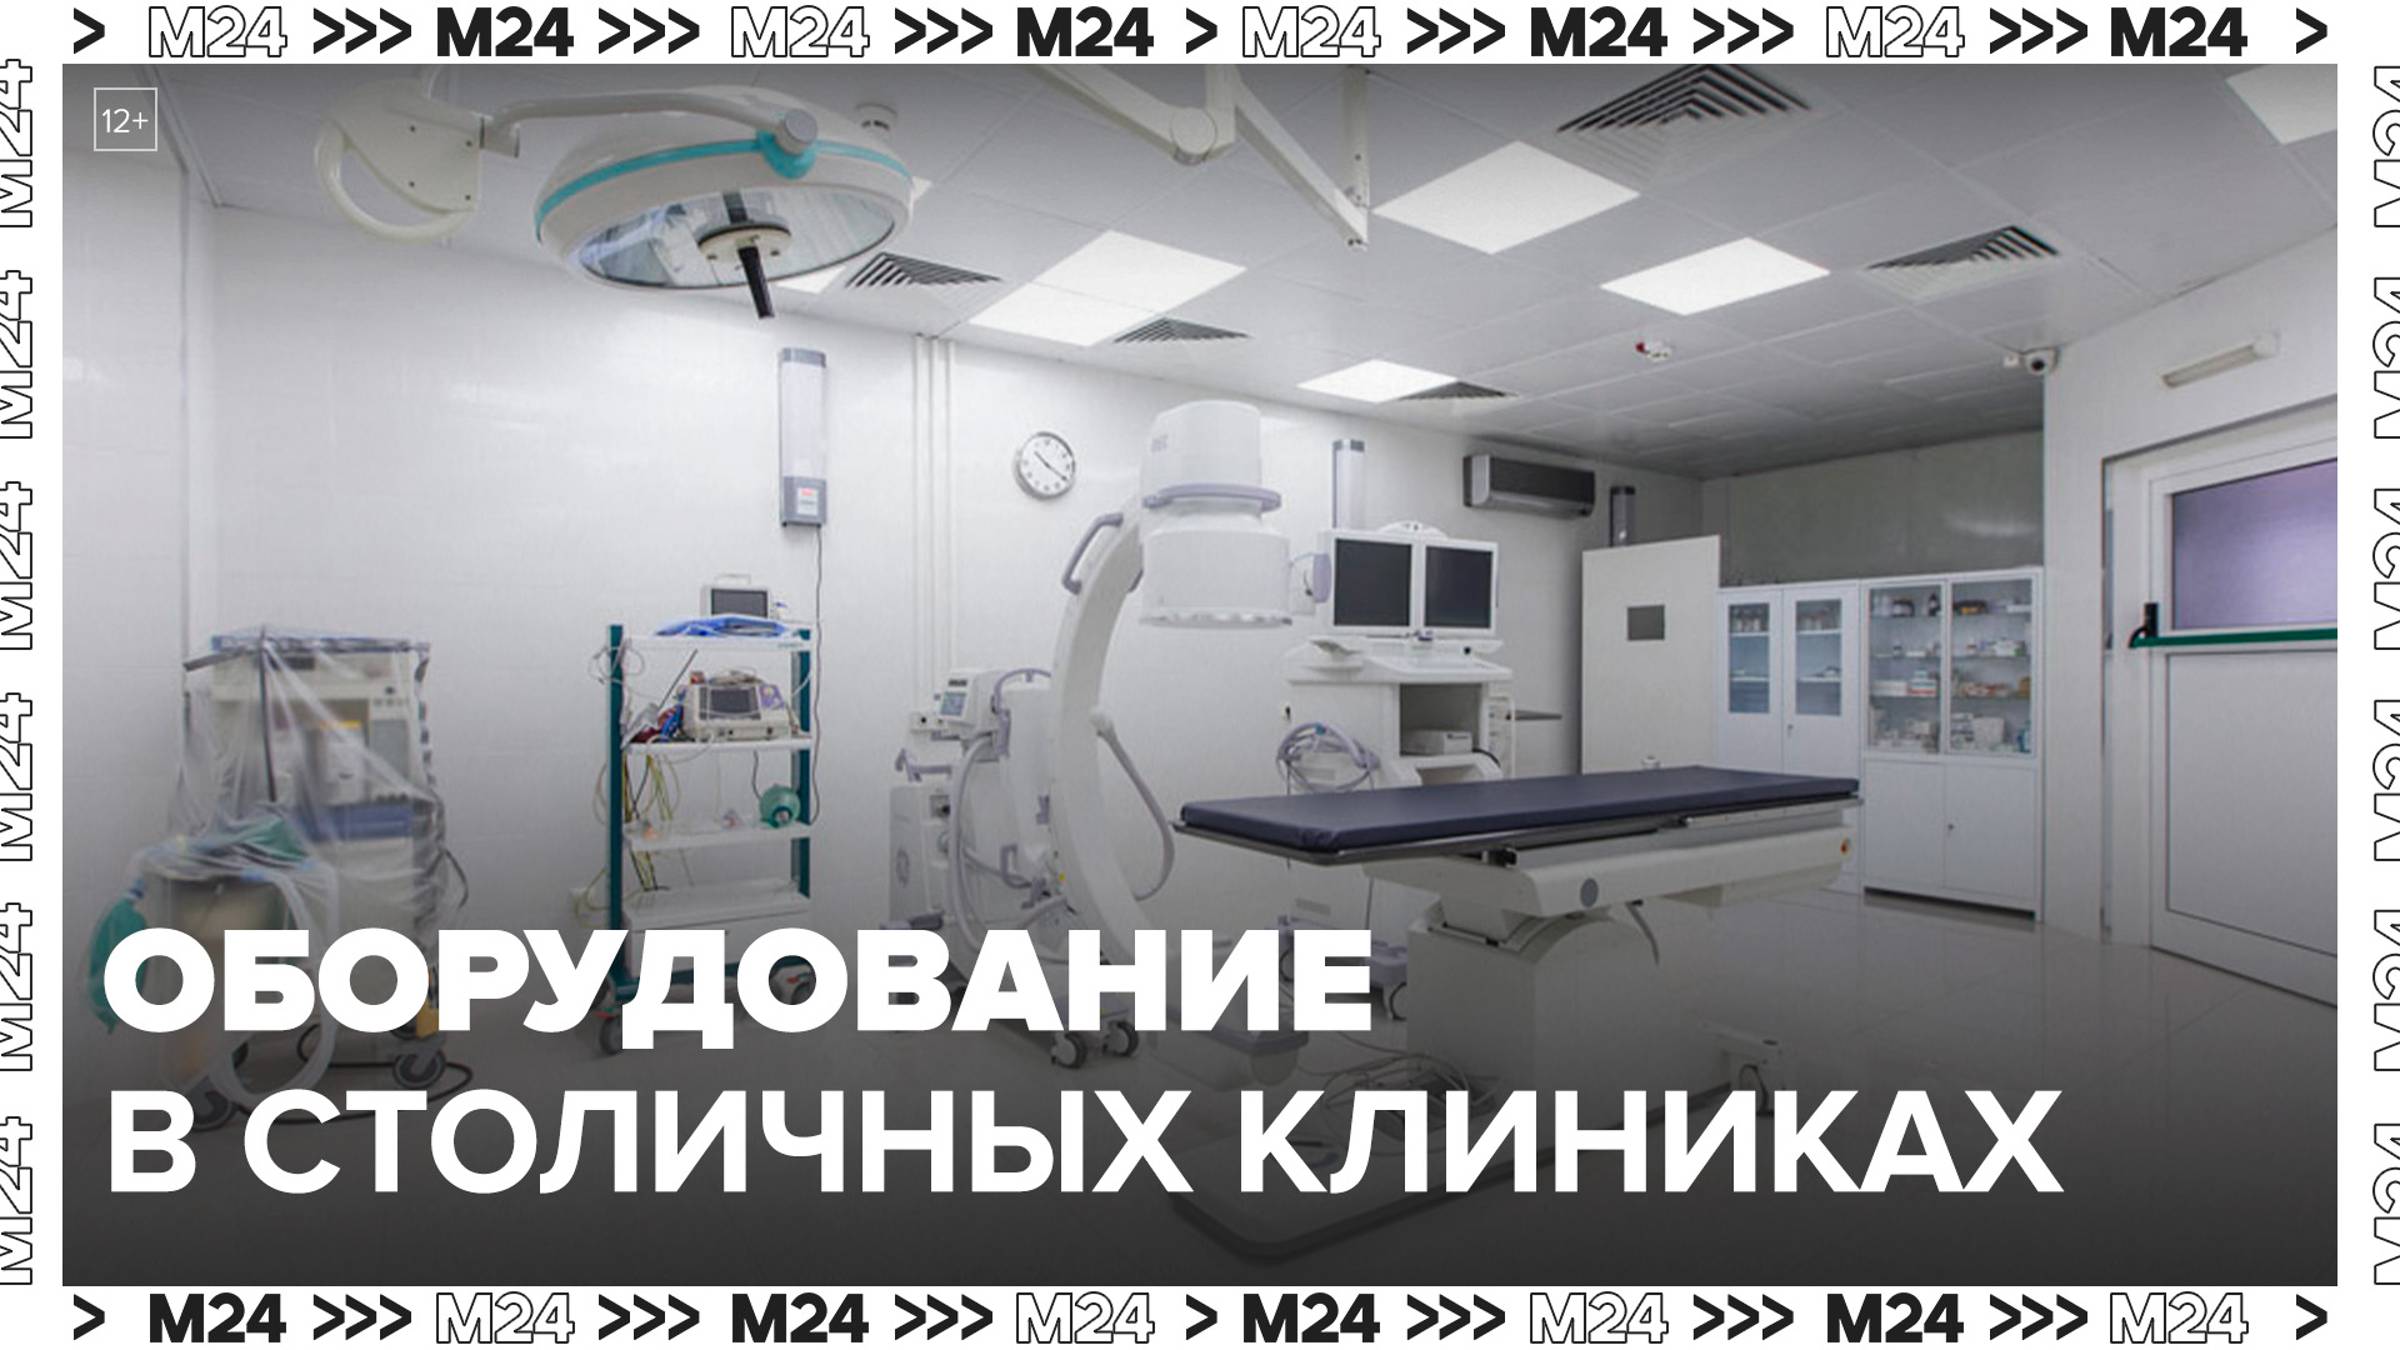 Врачи показали современное оборудование в столичных клиниках - Москва 24